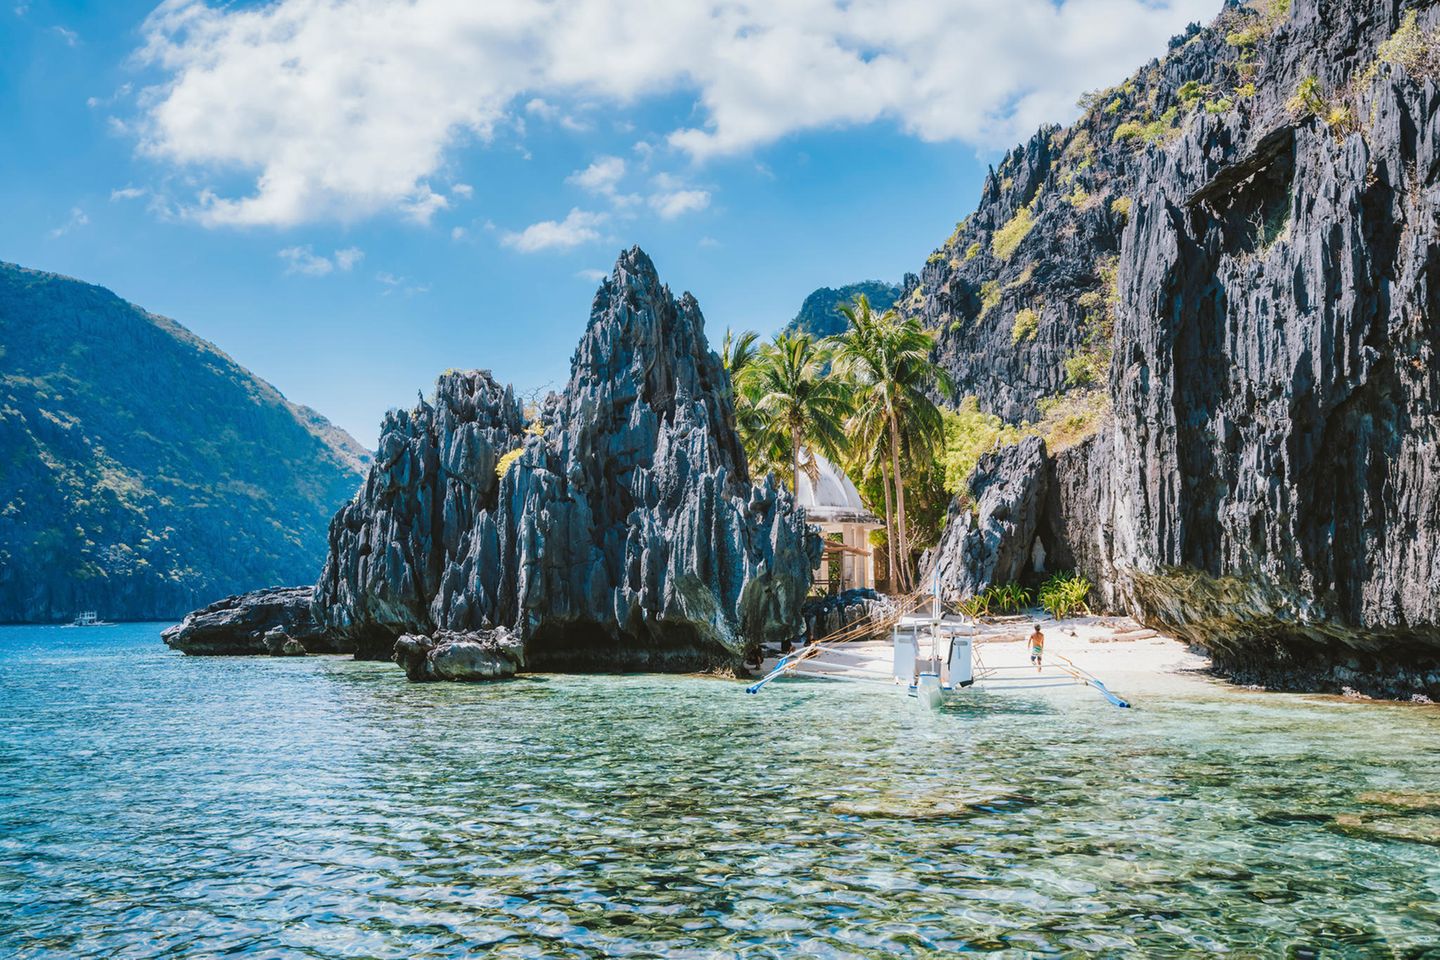 Die Nordspitze von Palawan, eine Insel im Westen der Philippinen, glänzt mit malerischer Kulisse. Rund um die kleine Fischerstadt El Nido finden sich einige der schönsten Badespots der Welt